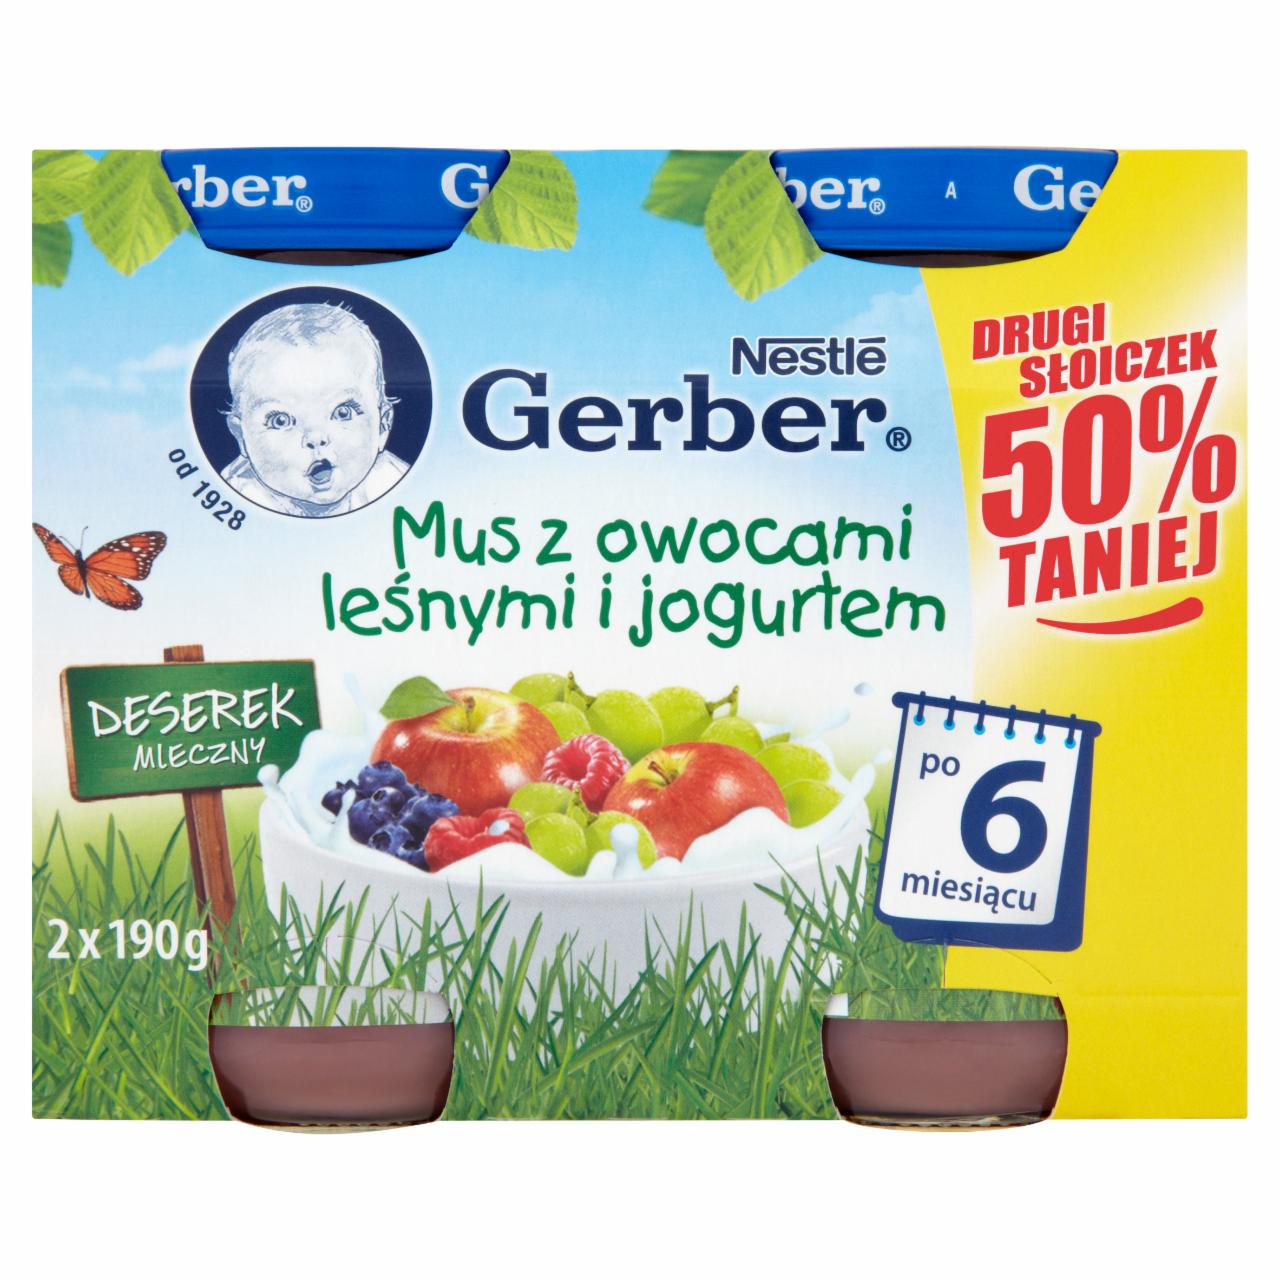 Zdjęcia - Gerber Deserek Mleczny Mus z owocami leśnymi i jogurtem po 6 miesiącu 2 x 190 g